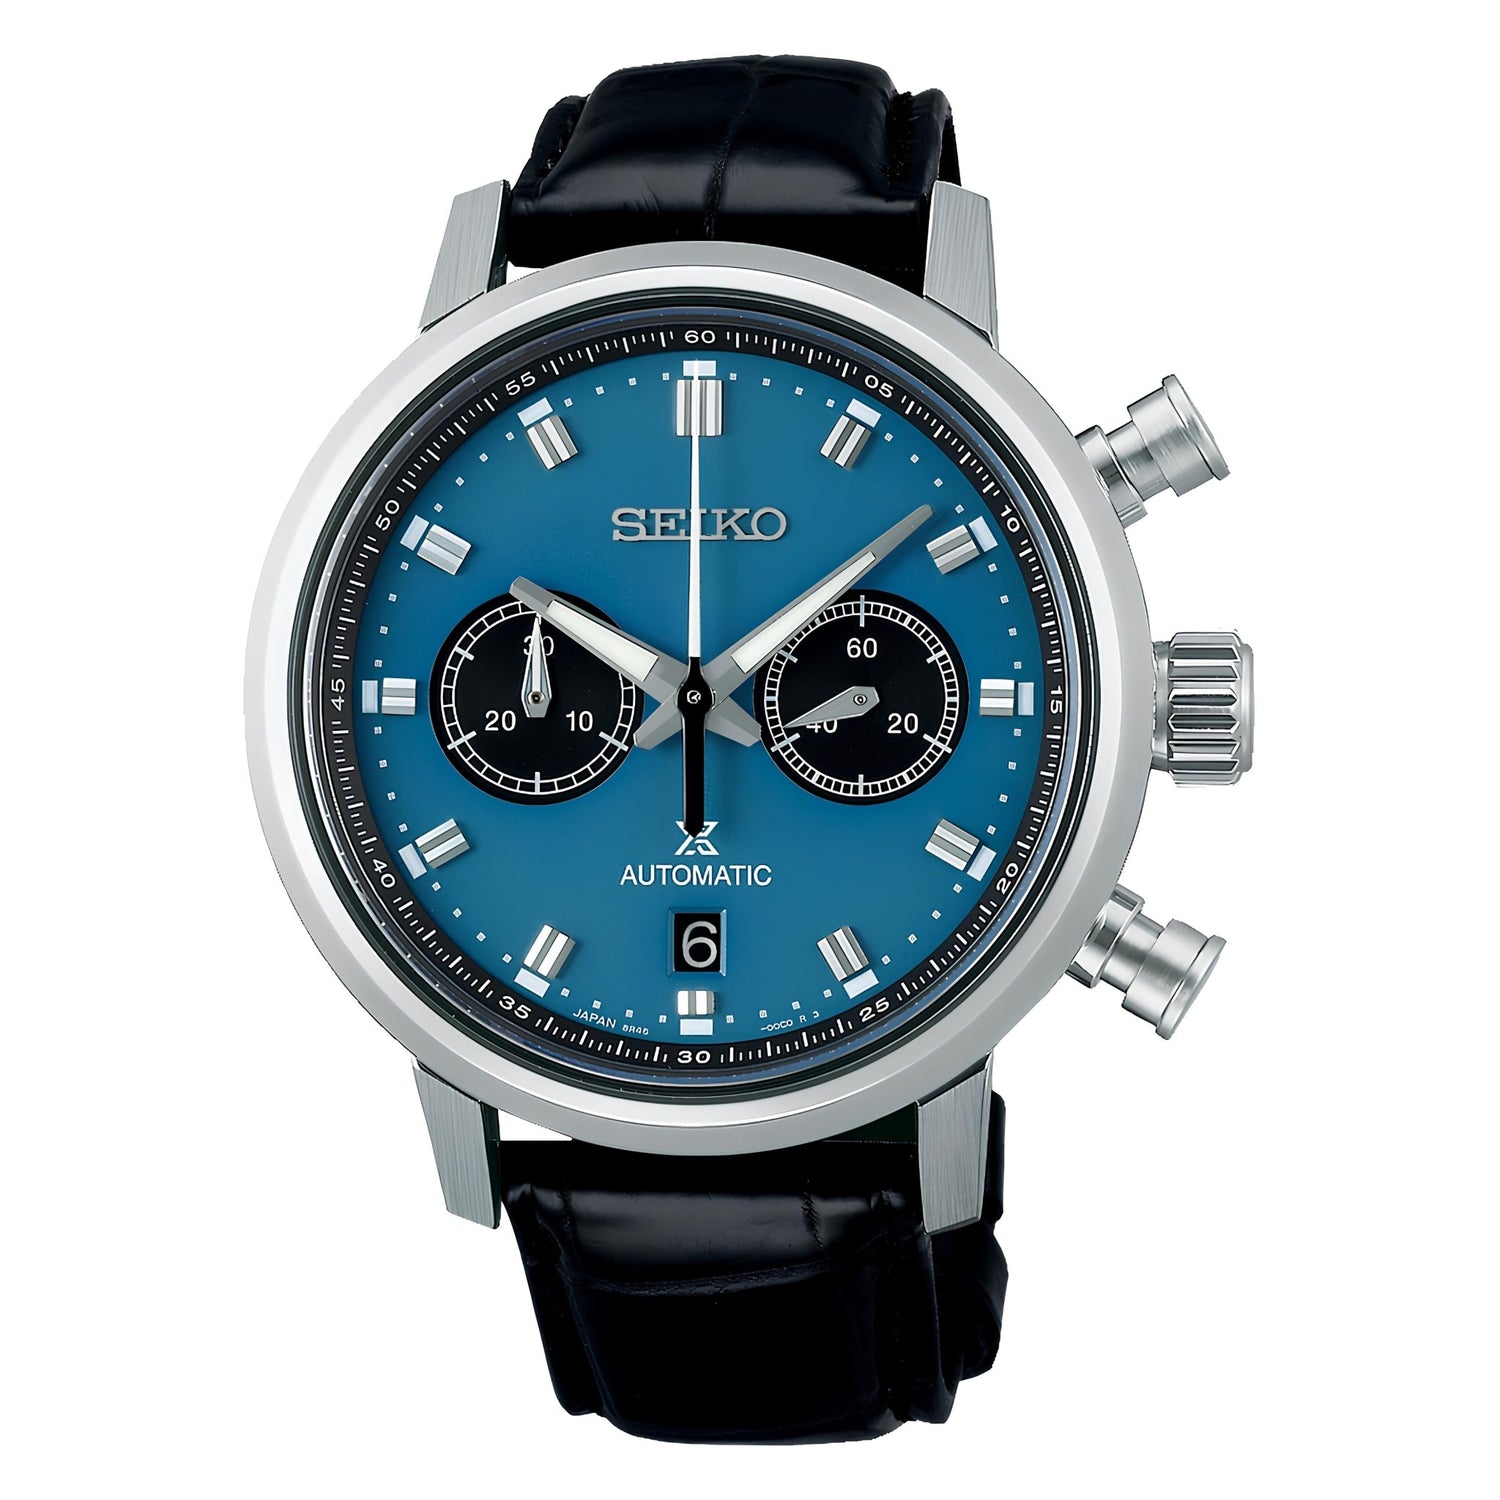 5 Best Seiko Watches Under $2500: Best Value Timepieces